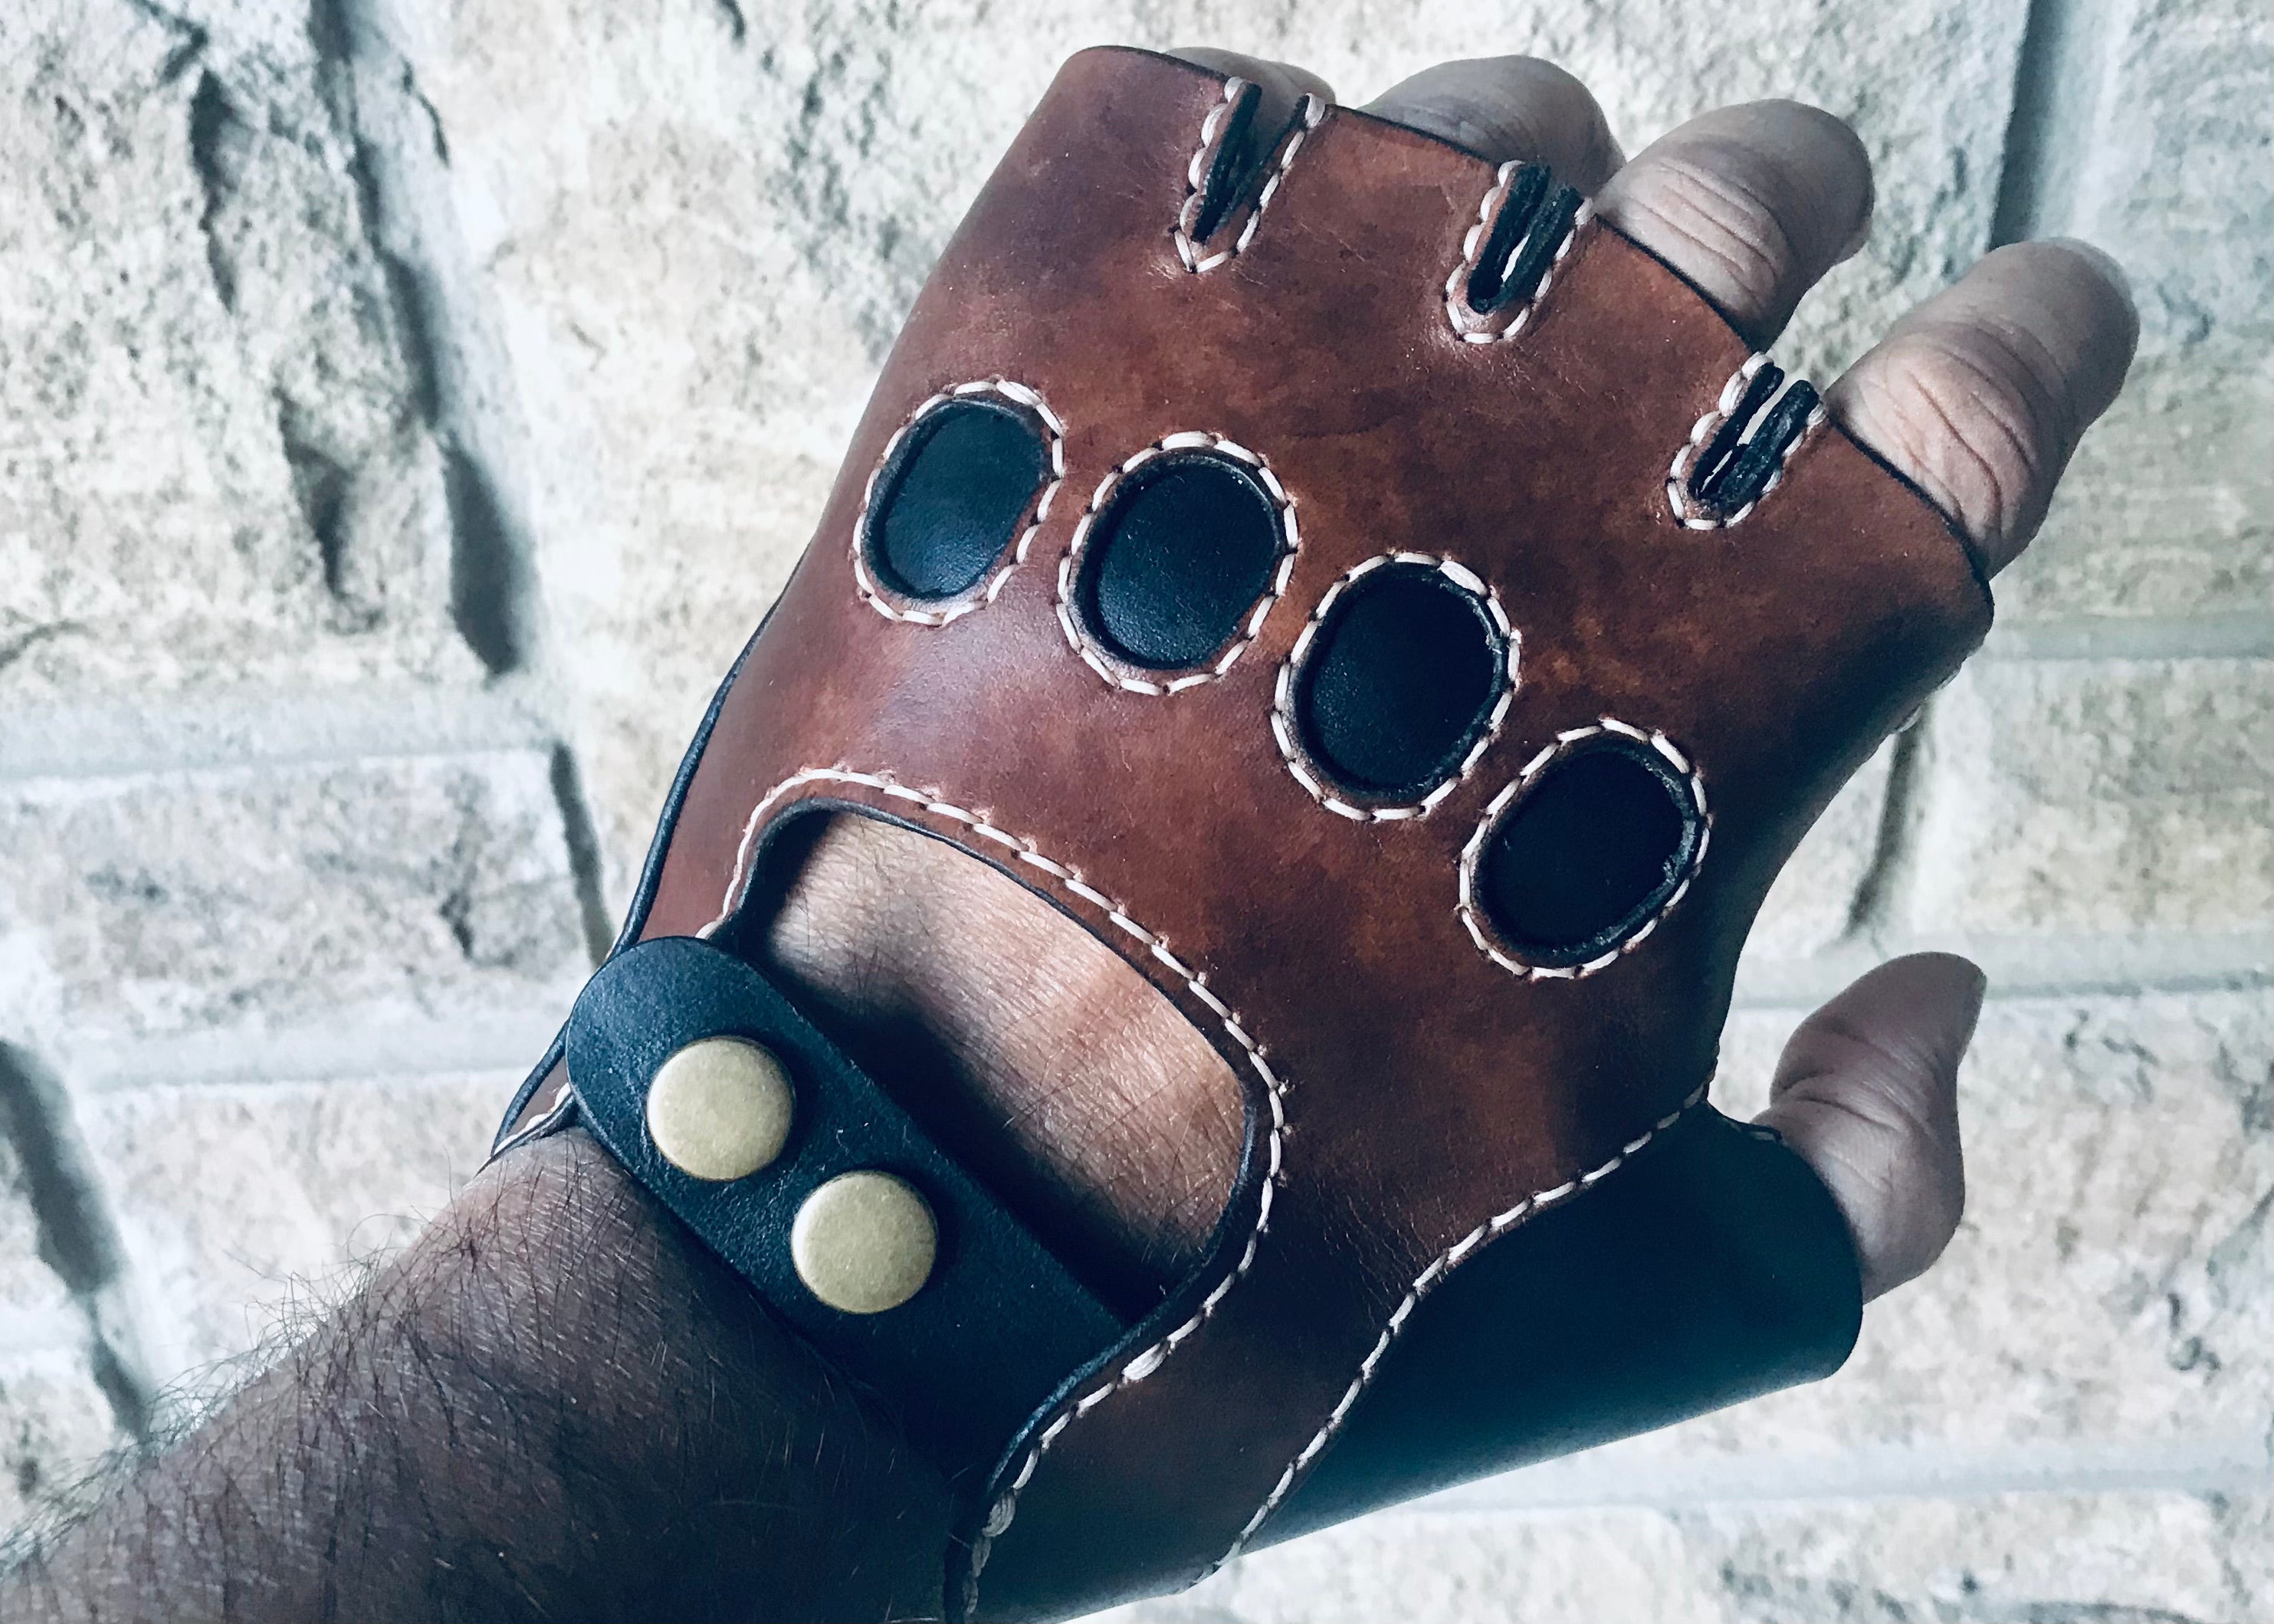 Black Fingerless Yoga Gloves with Slip-Free Beads